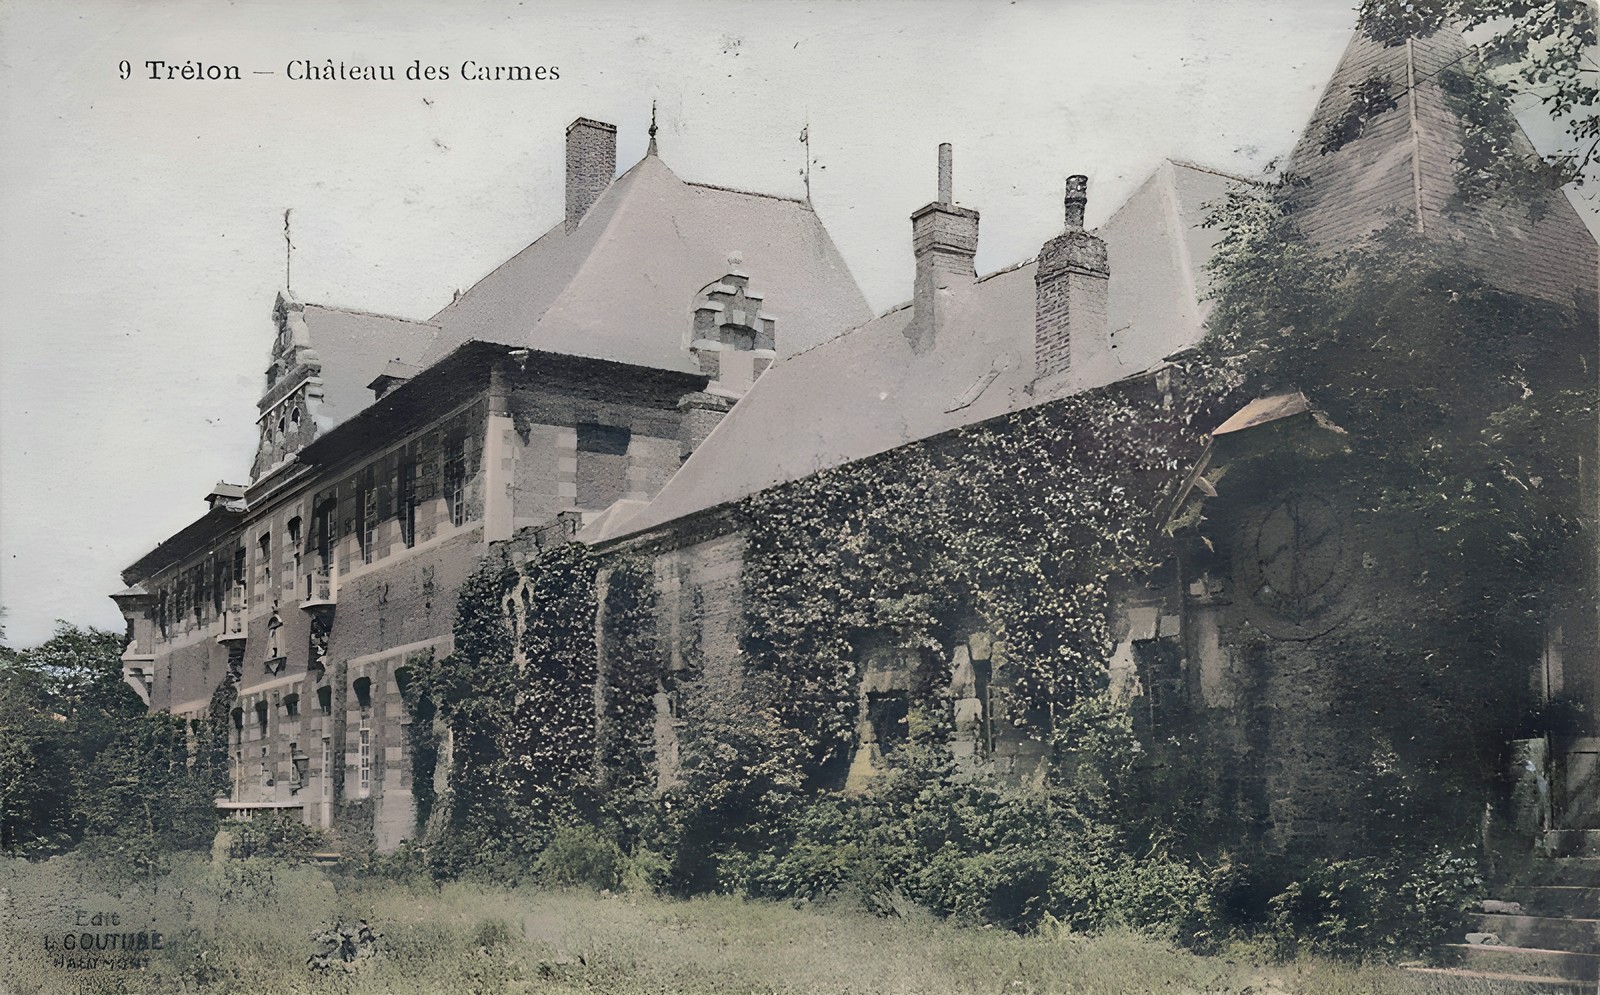 Le Château des Carmes à Trélon